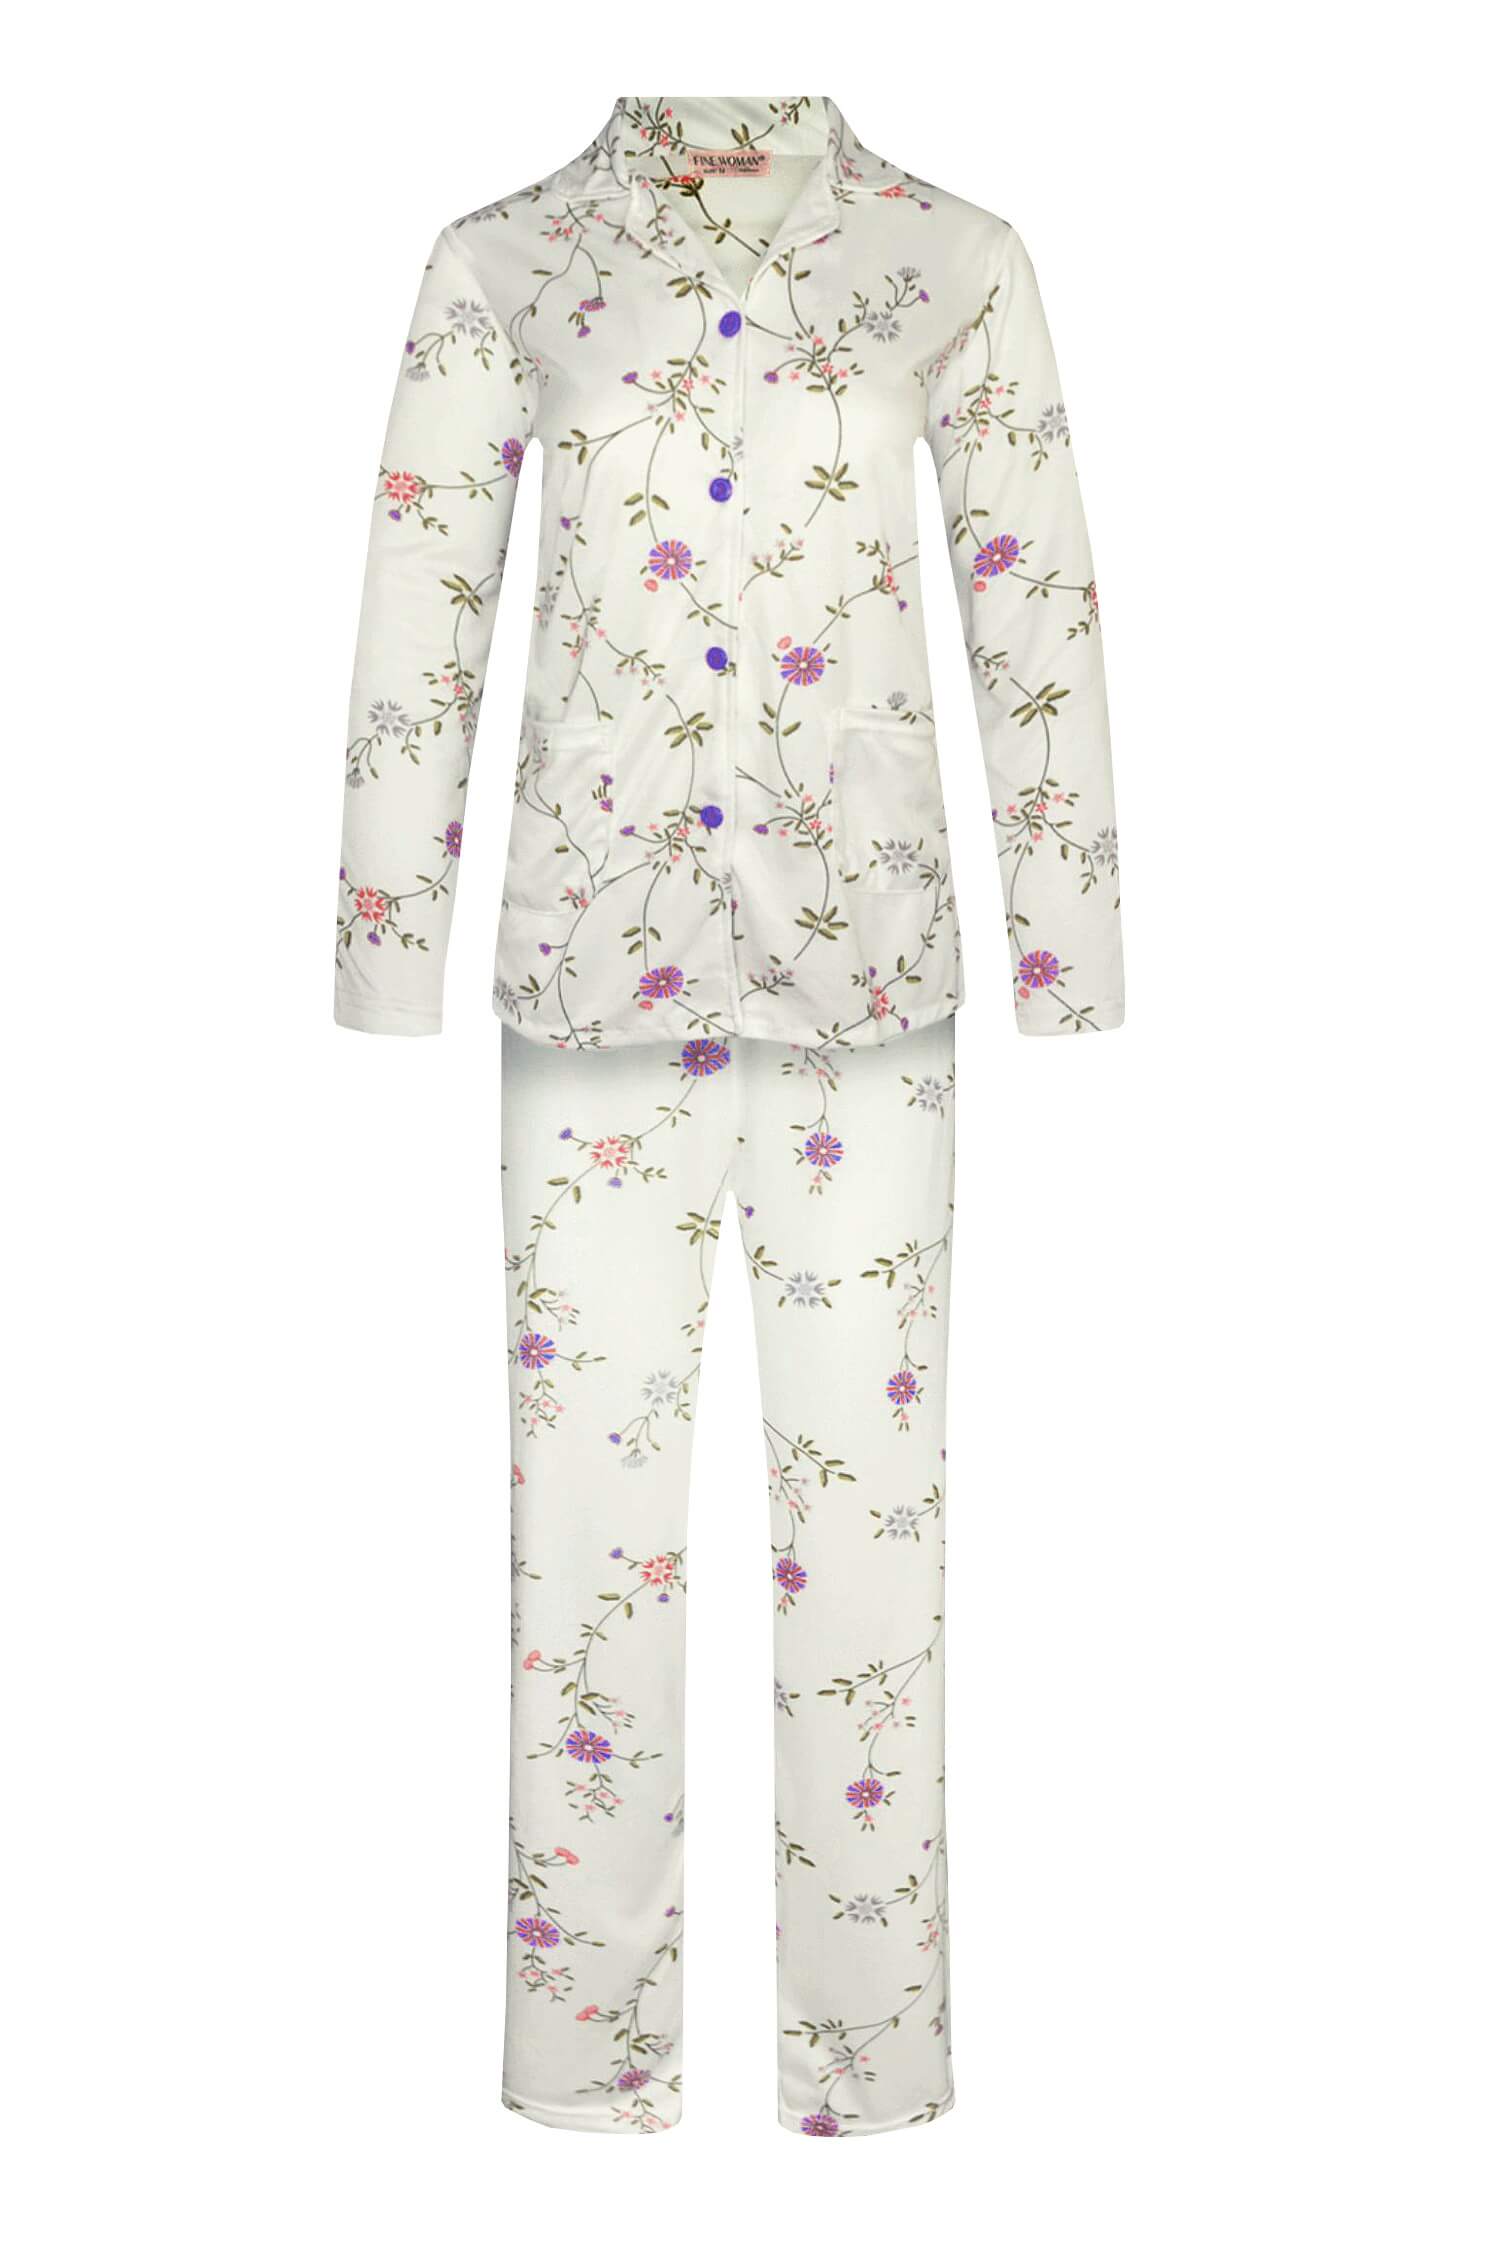 Lidka dámské pyžamo s dlouhým rukávem 2303 XL fialová